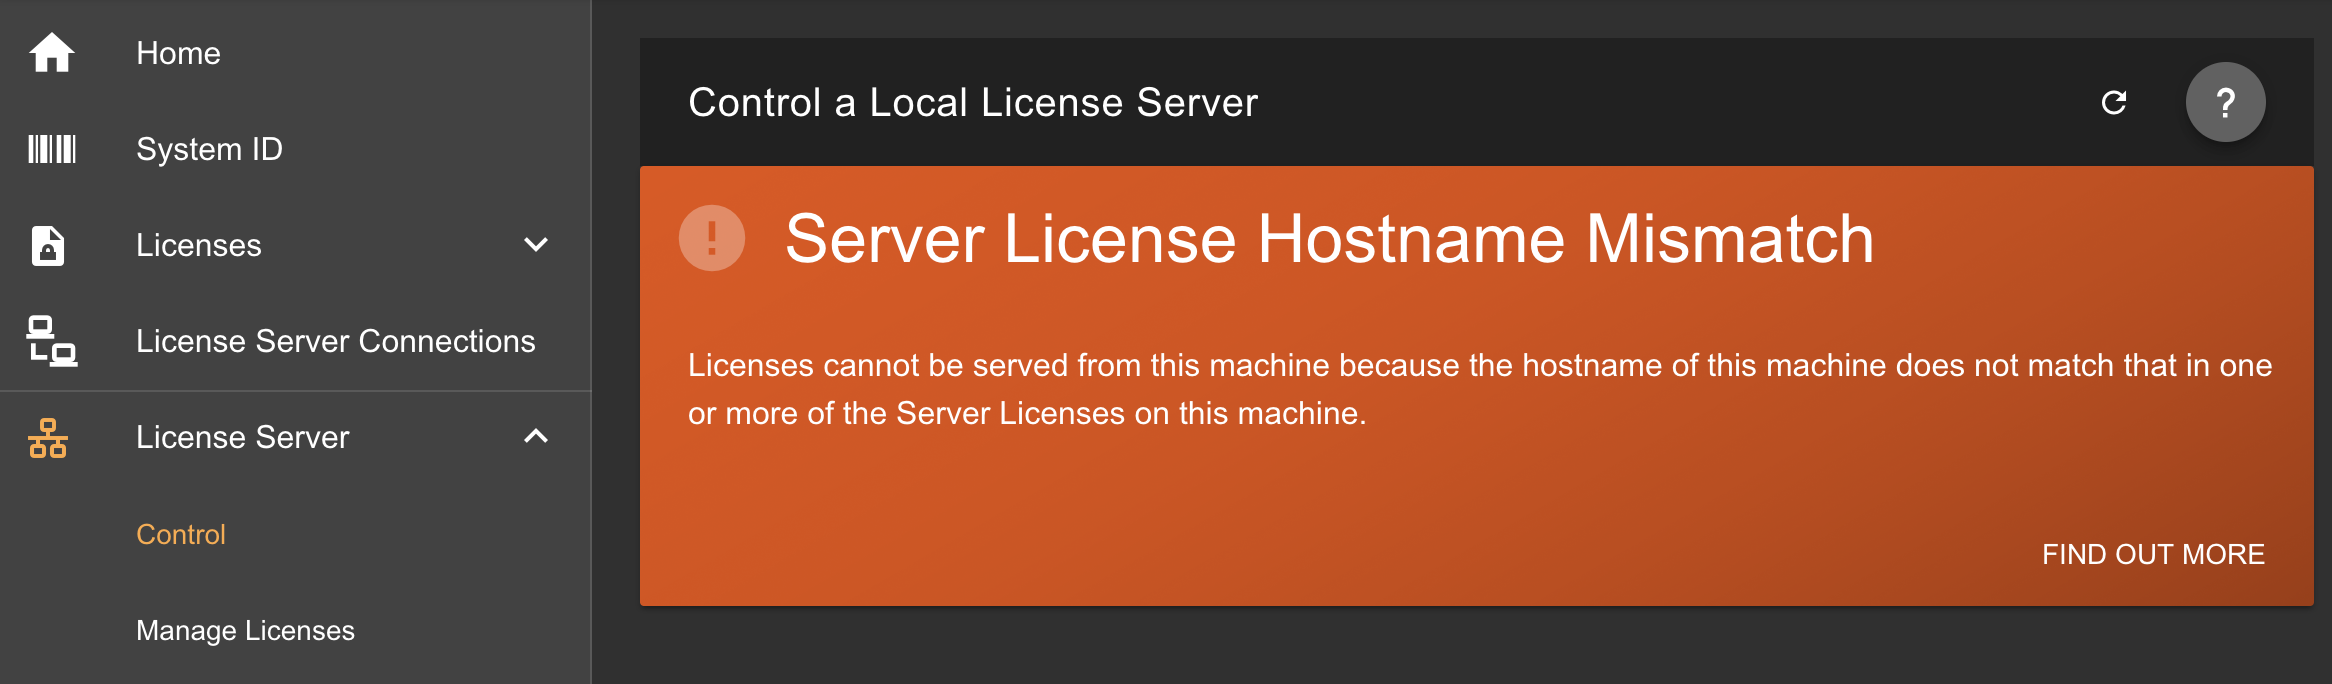 phpstorm 2017.2 license server